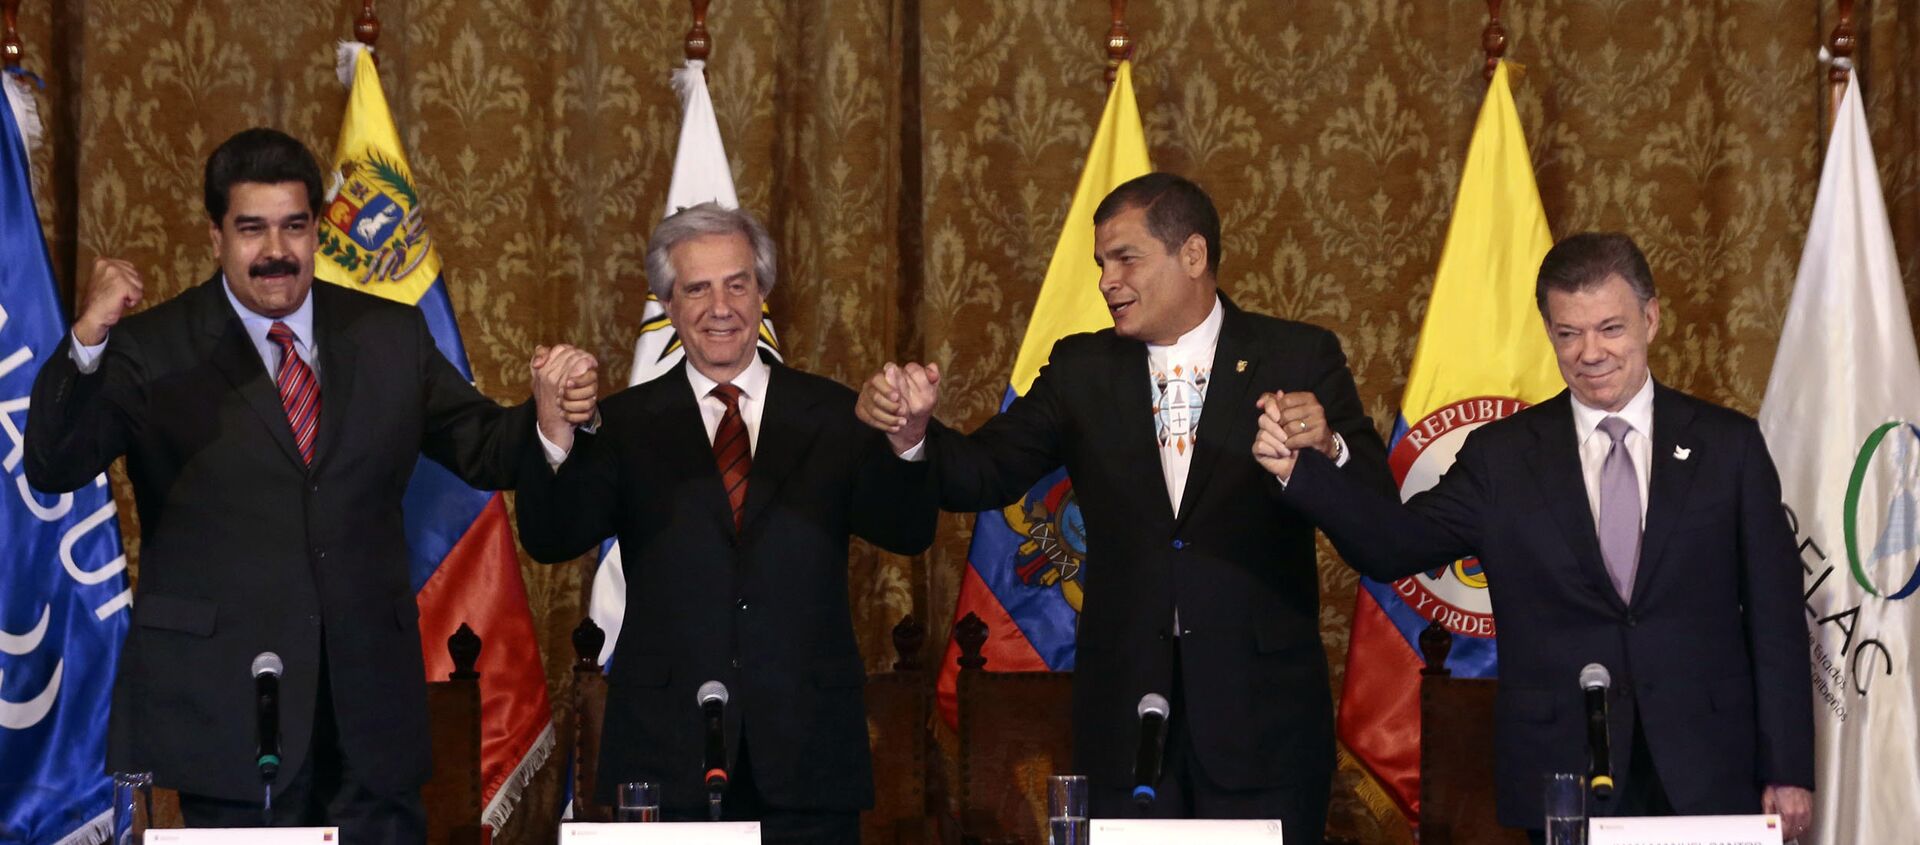 Presidente de Venezuela, Nicolás Maduro, presidente de Uruguay, Tabaré Vázquez, presidente de Ecuador, Rafael Correa, y presidente de Colombia, Juan Manuel Santos - Sputnik Mundo, 1920, 22.09.2015